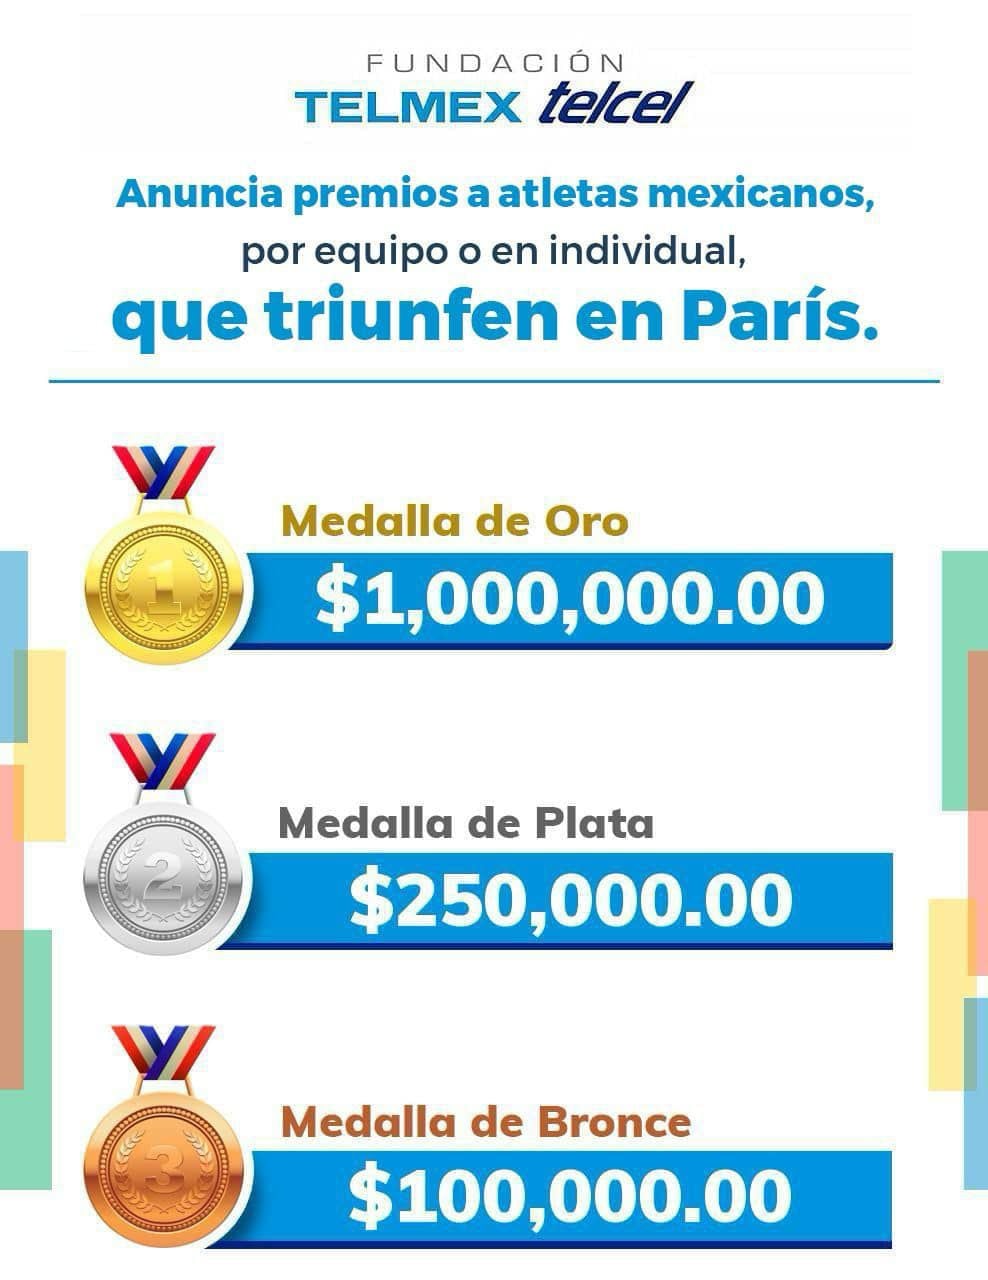 La Fundación Telmex-Telcel anunció incentivos económicos a medallistas mexicanos en París 2024. (Foto: Facebook @fundaciontelmextelcel)